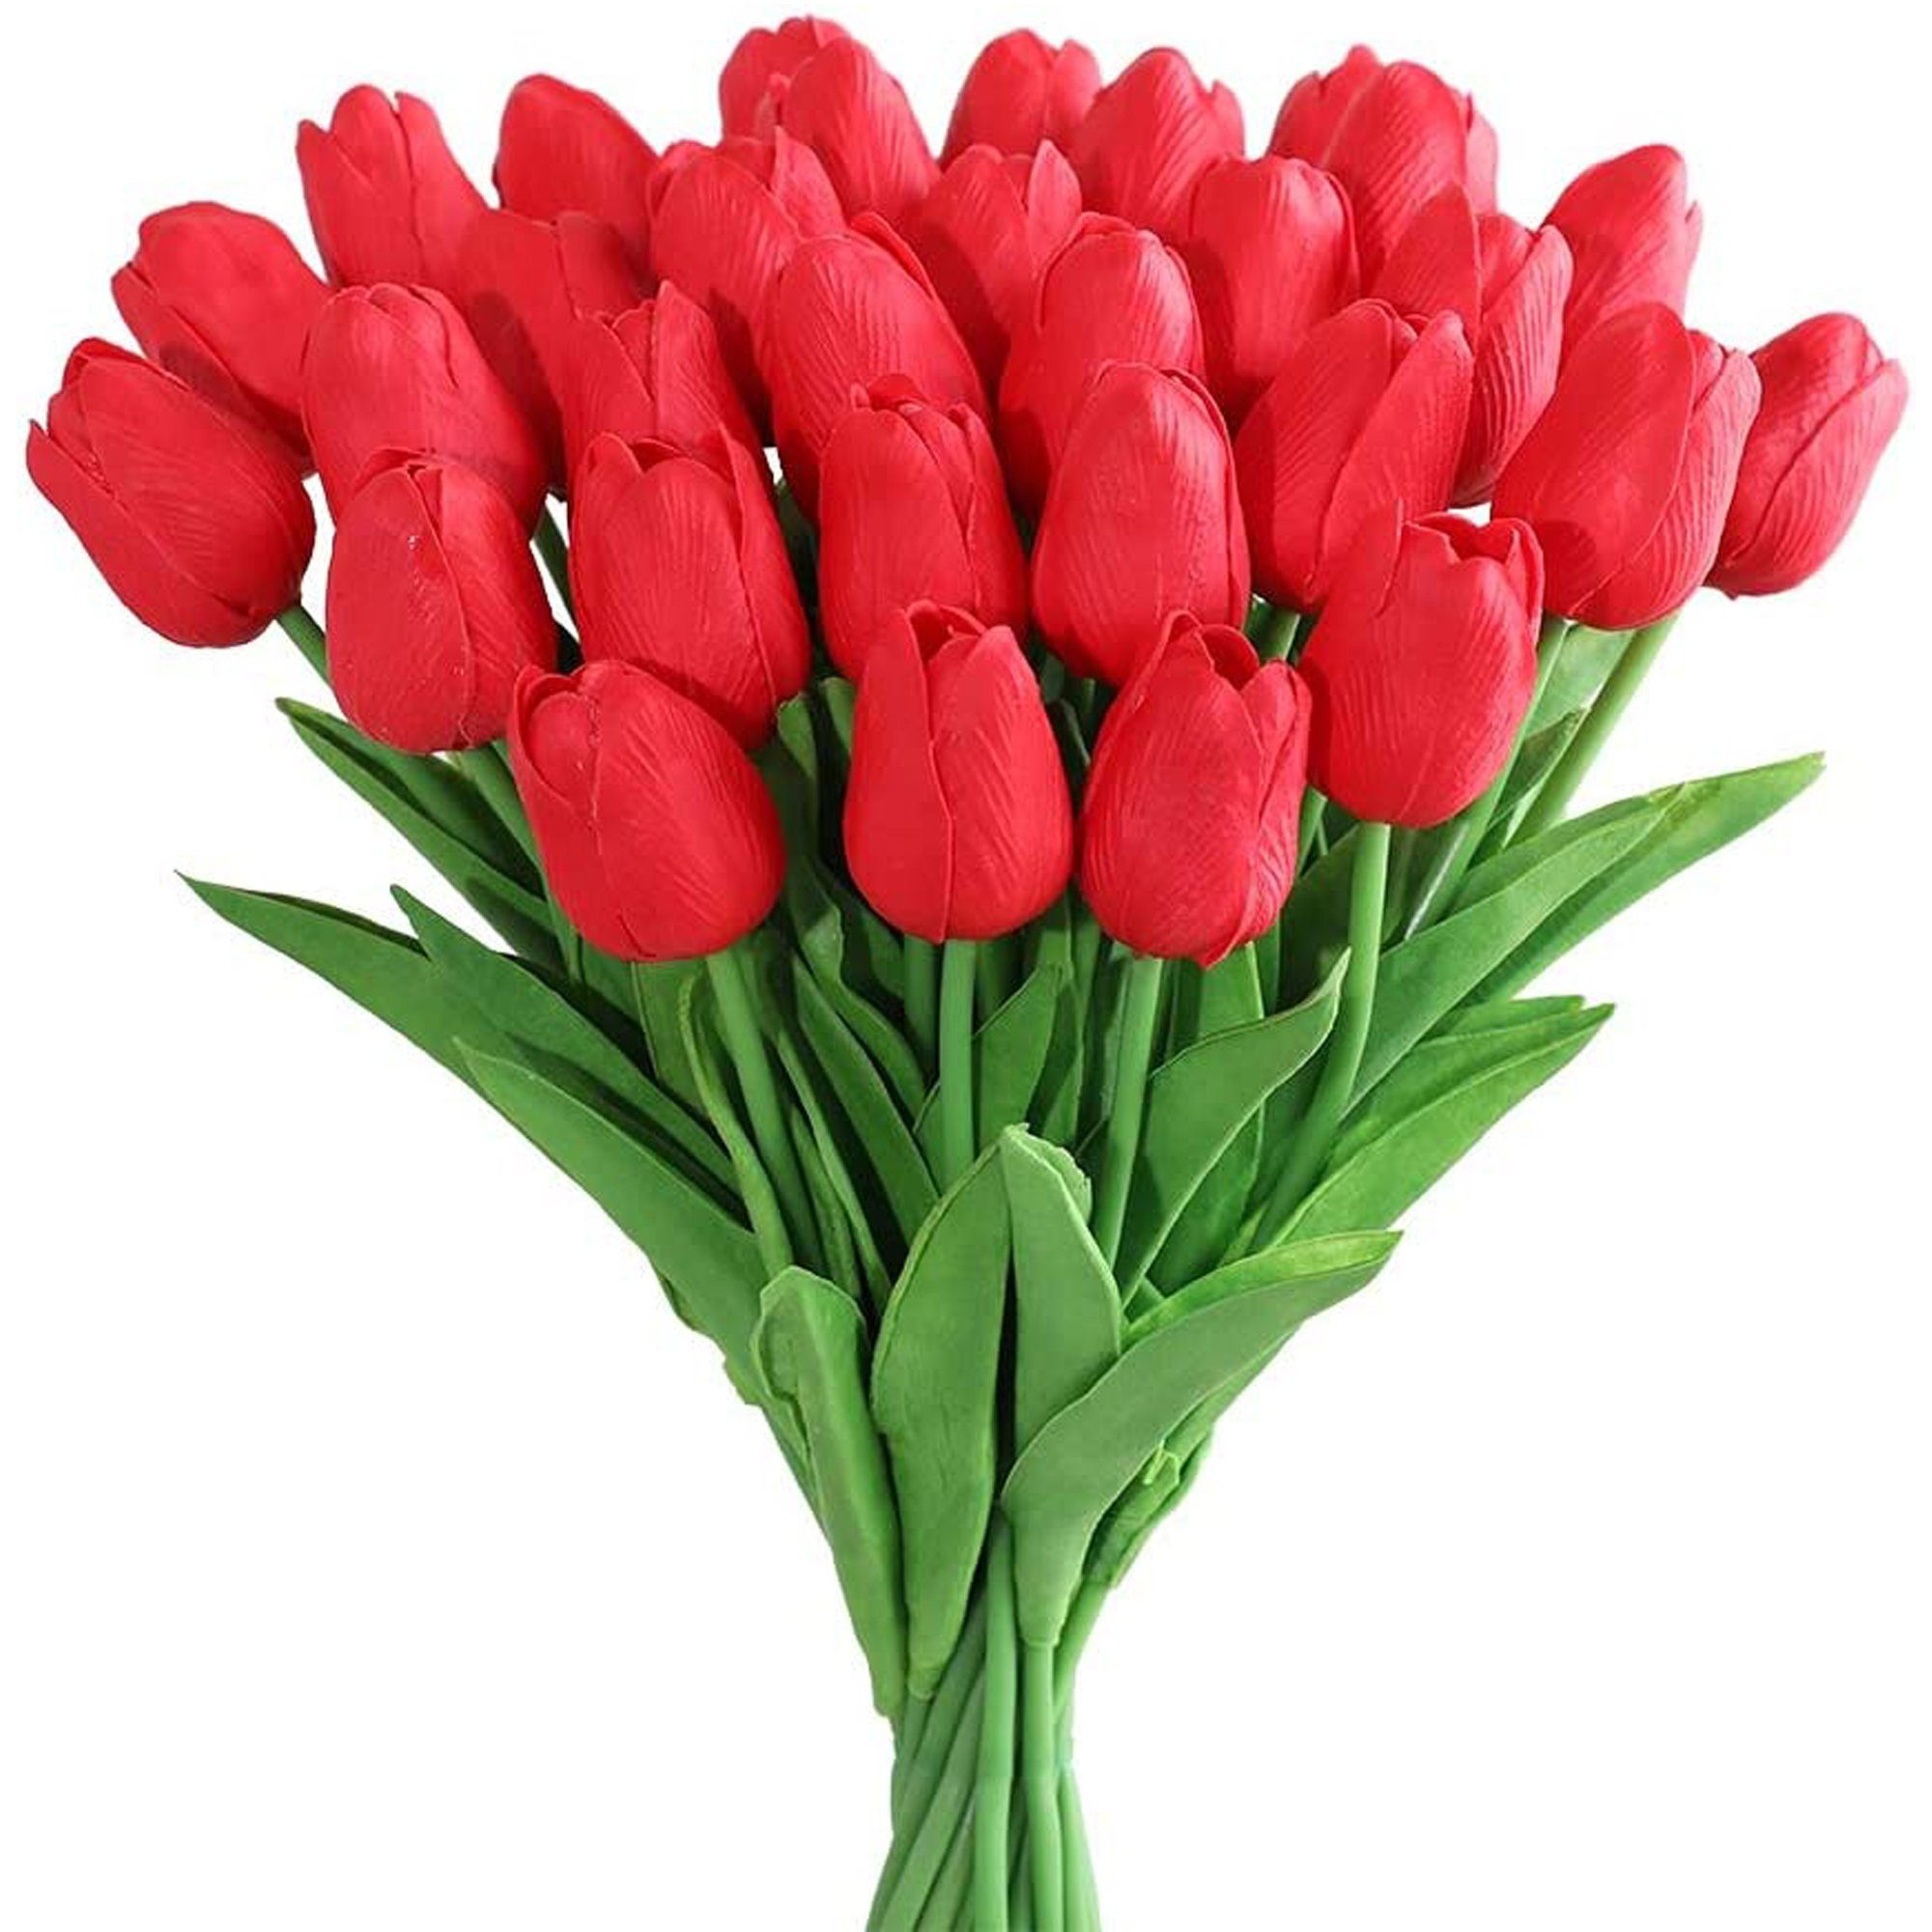 Kunstblume 10 Stück echte künstliche Tulpen Blumen Künstliche Tulpen, Mutoy, für Zuhause, Hochzeitsfeier, Party,Dekoration Rot